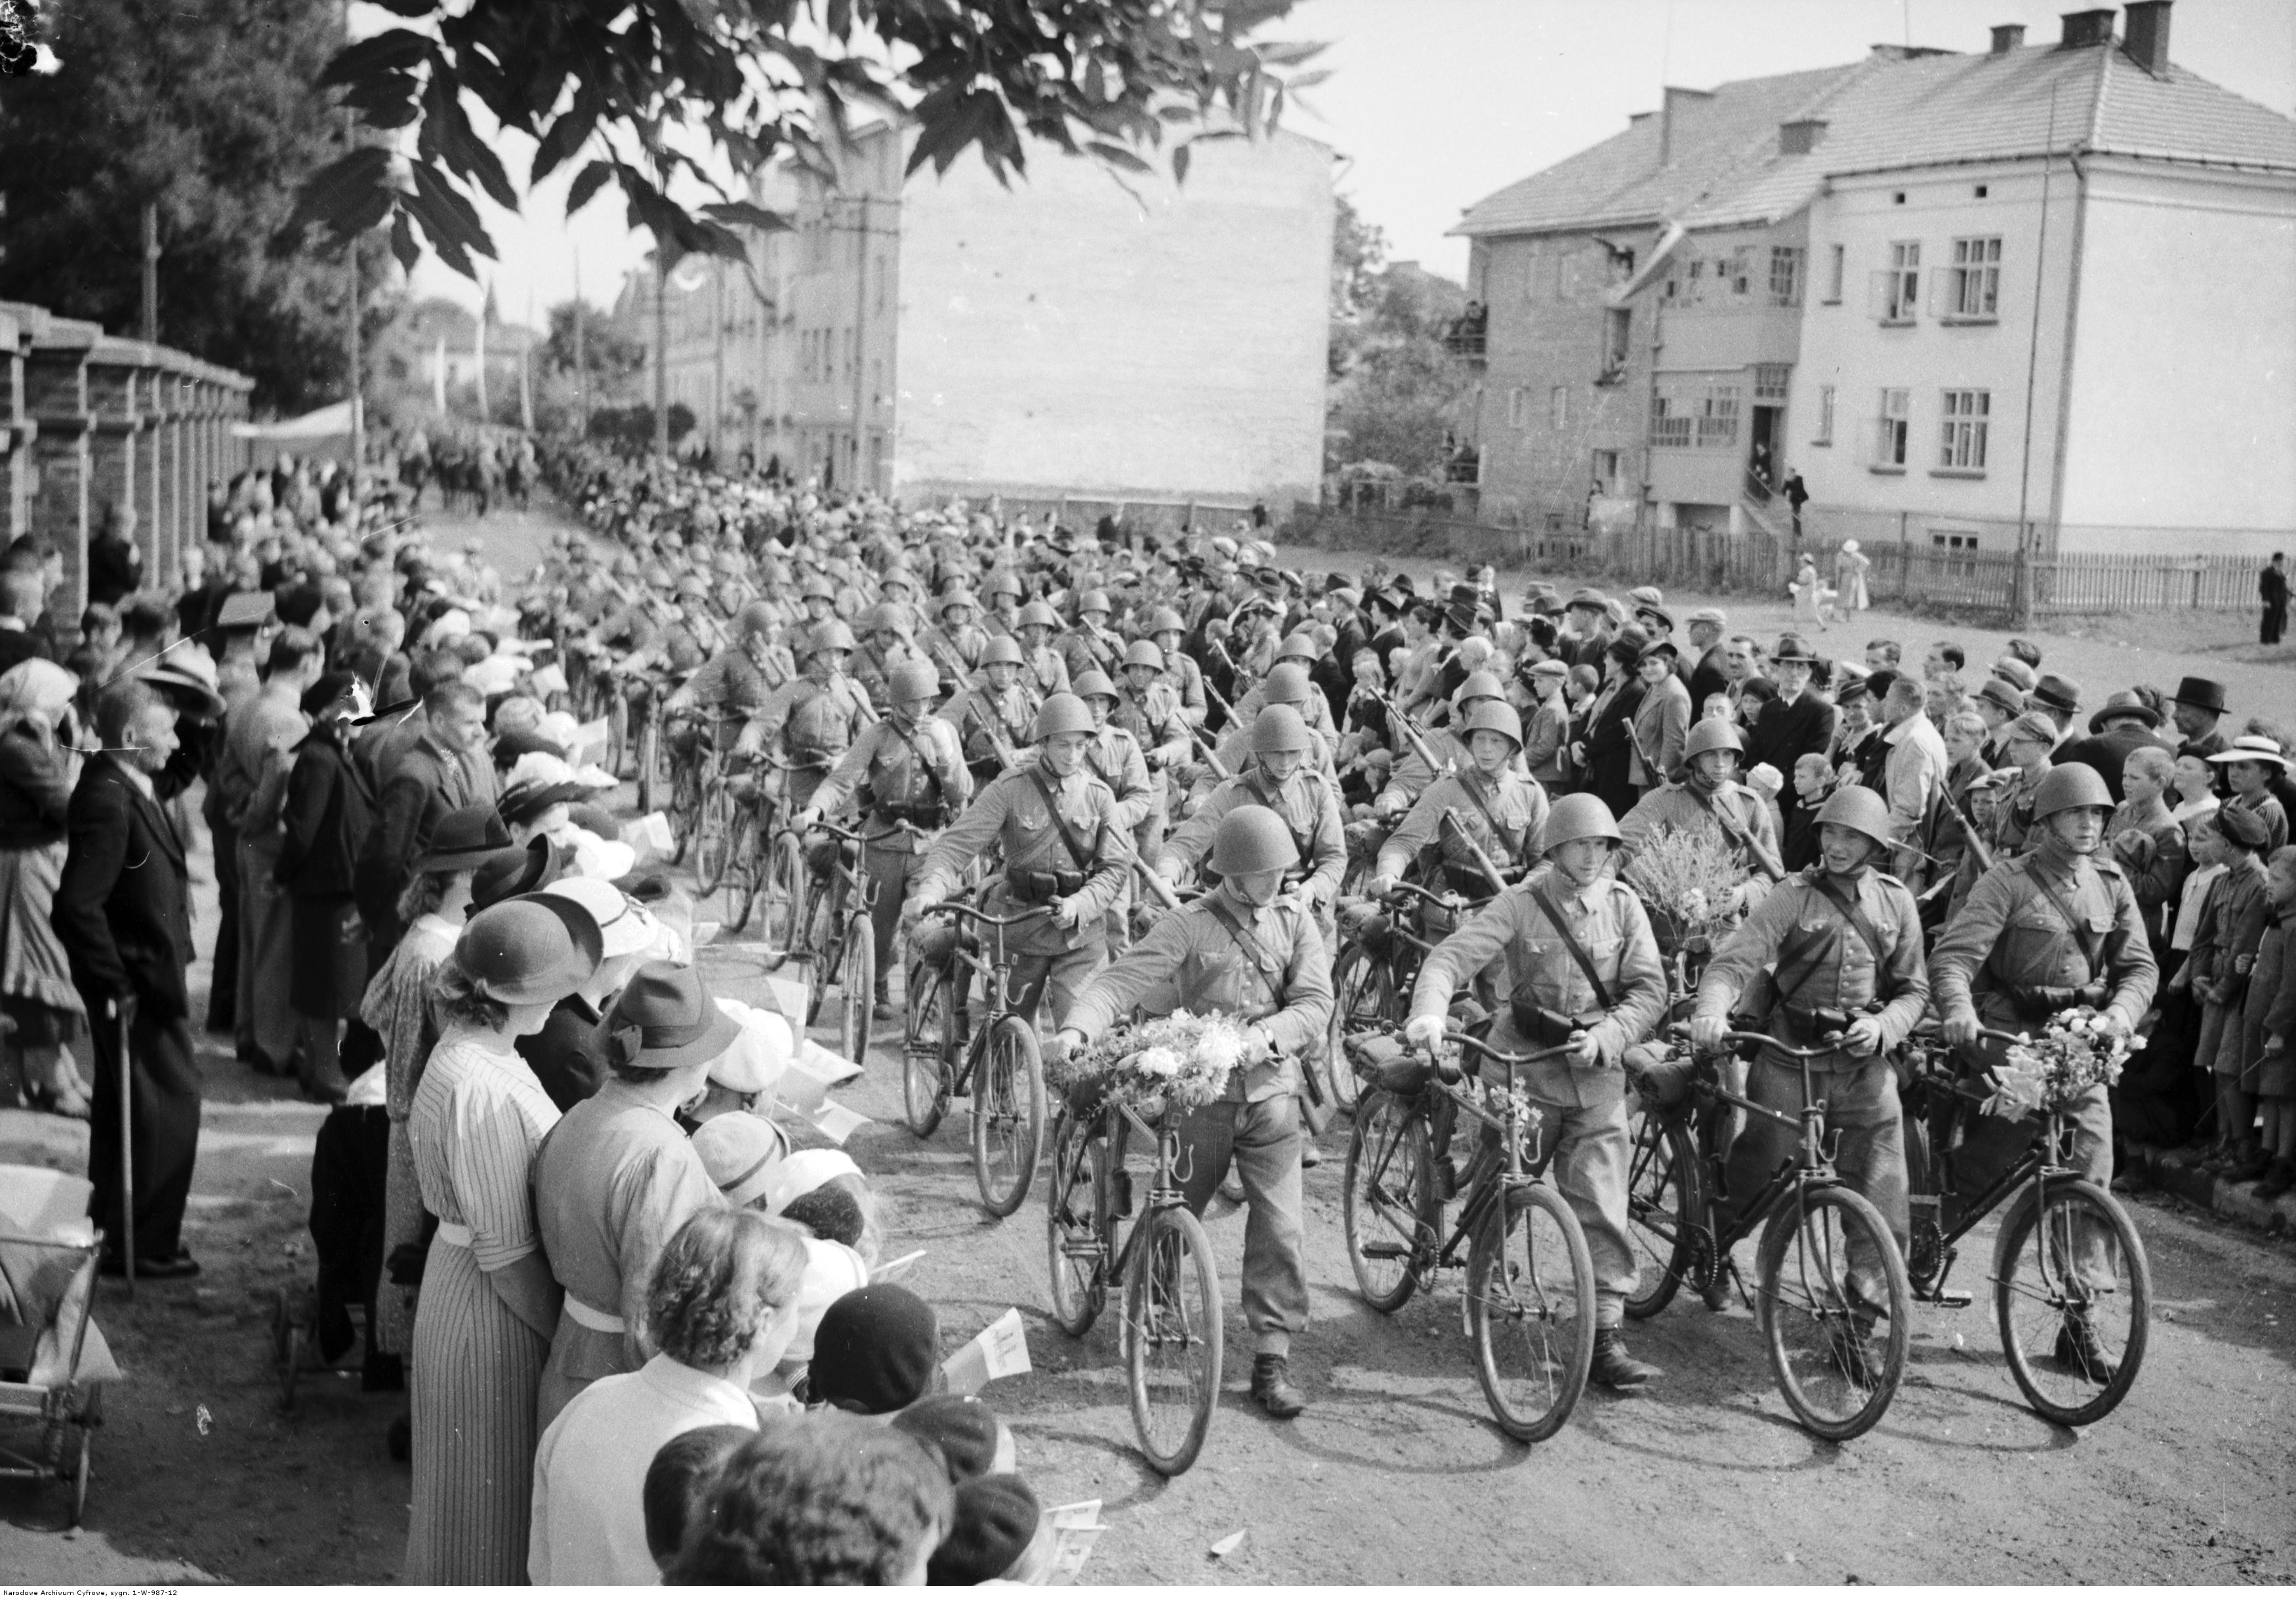 Powrót wojska po manewrach do Rzeszowa. Powitanie żołnierzy na jednej z ulic miasta - oddział żołnierzy z rowerami, rok 1938-09